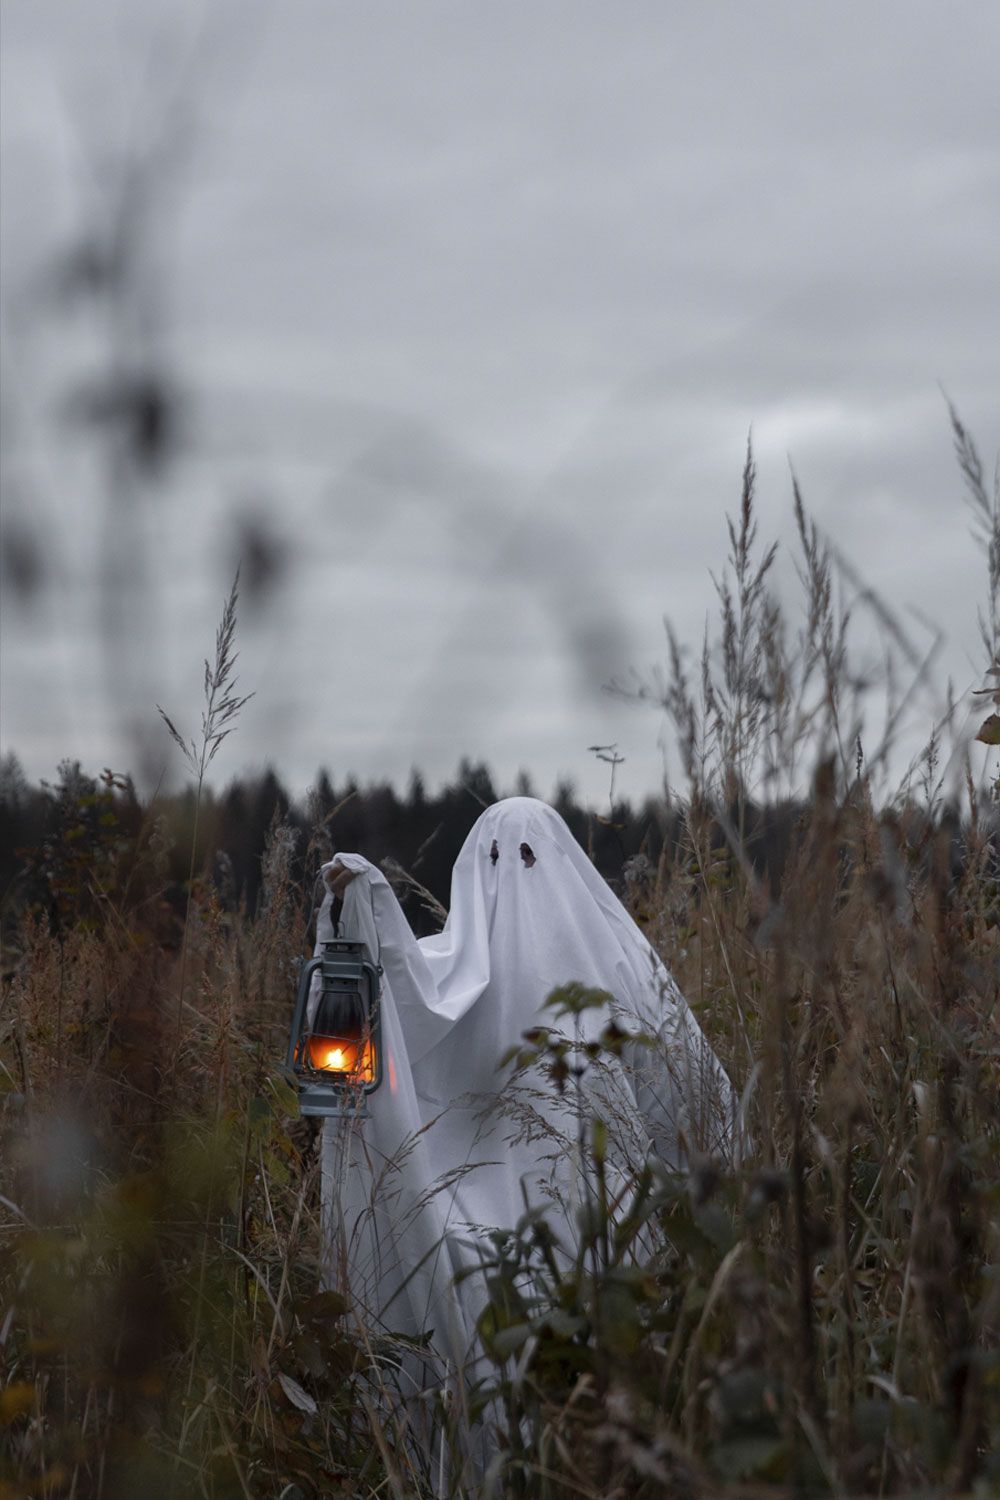 Ghost fancy dress in a field holding a lantern